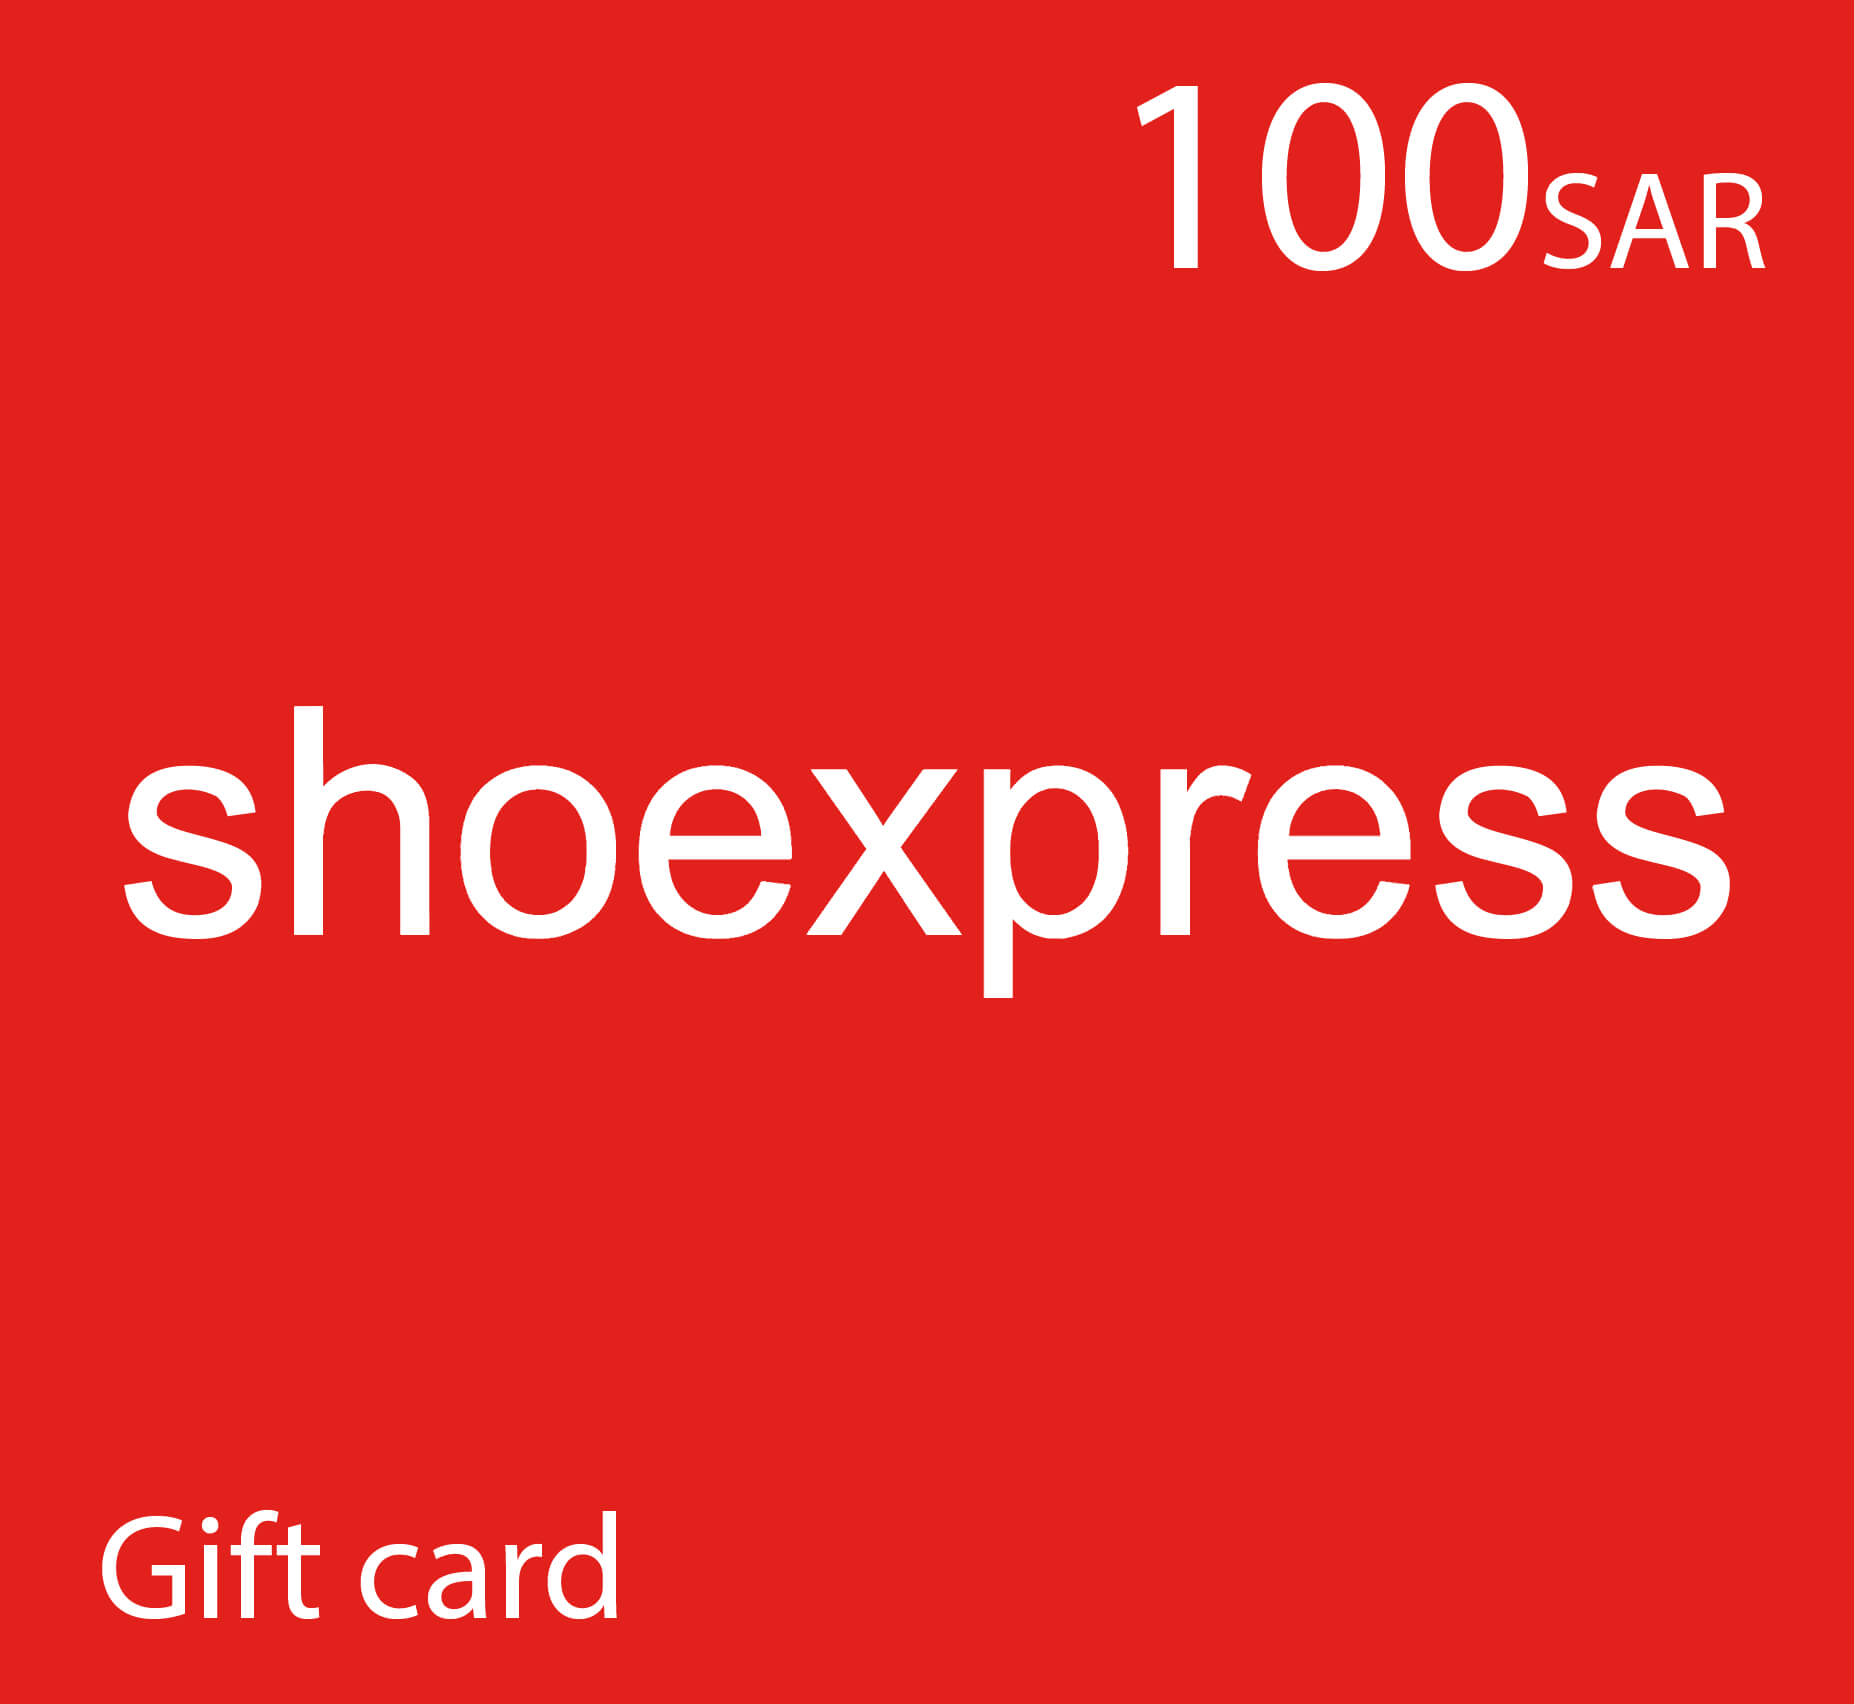 Shoexpress - 100 SAR